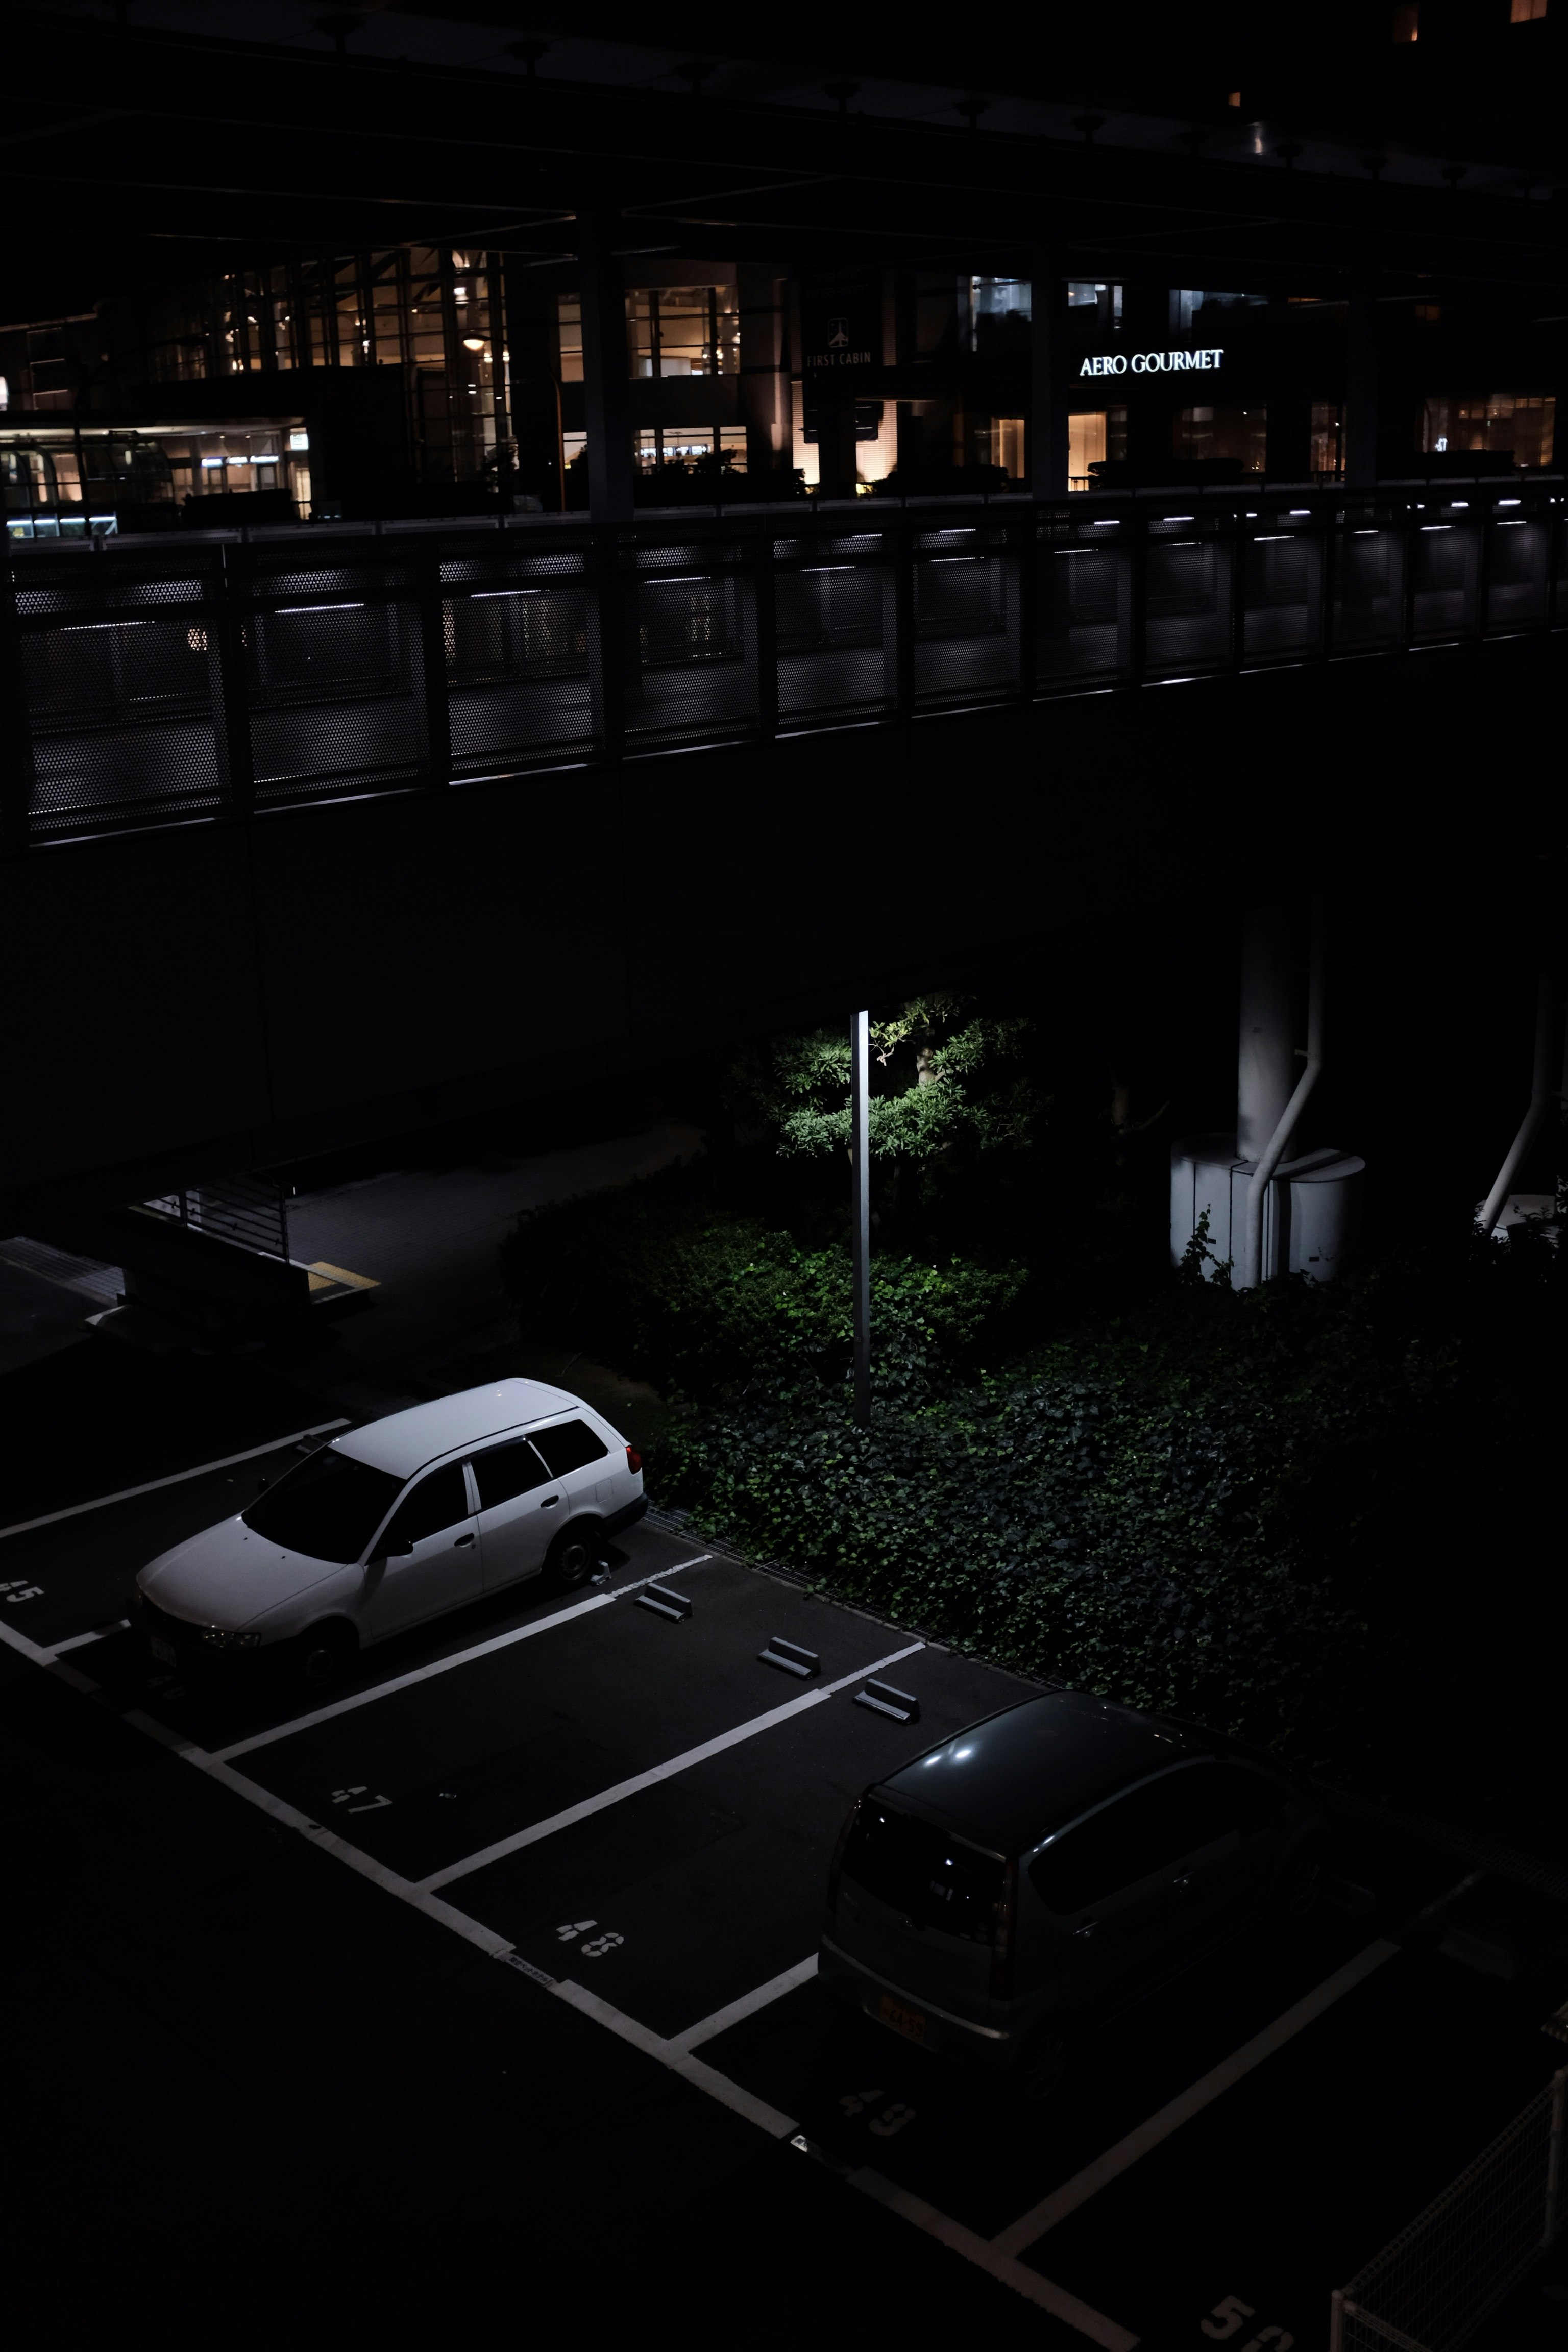 vehicles at parking lot at nighttime